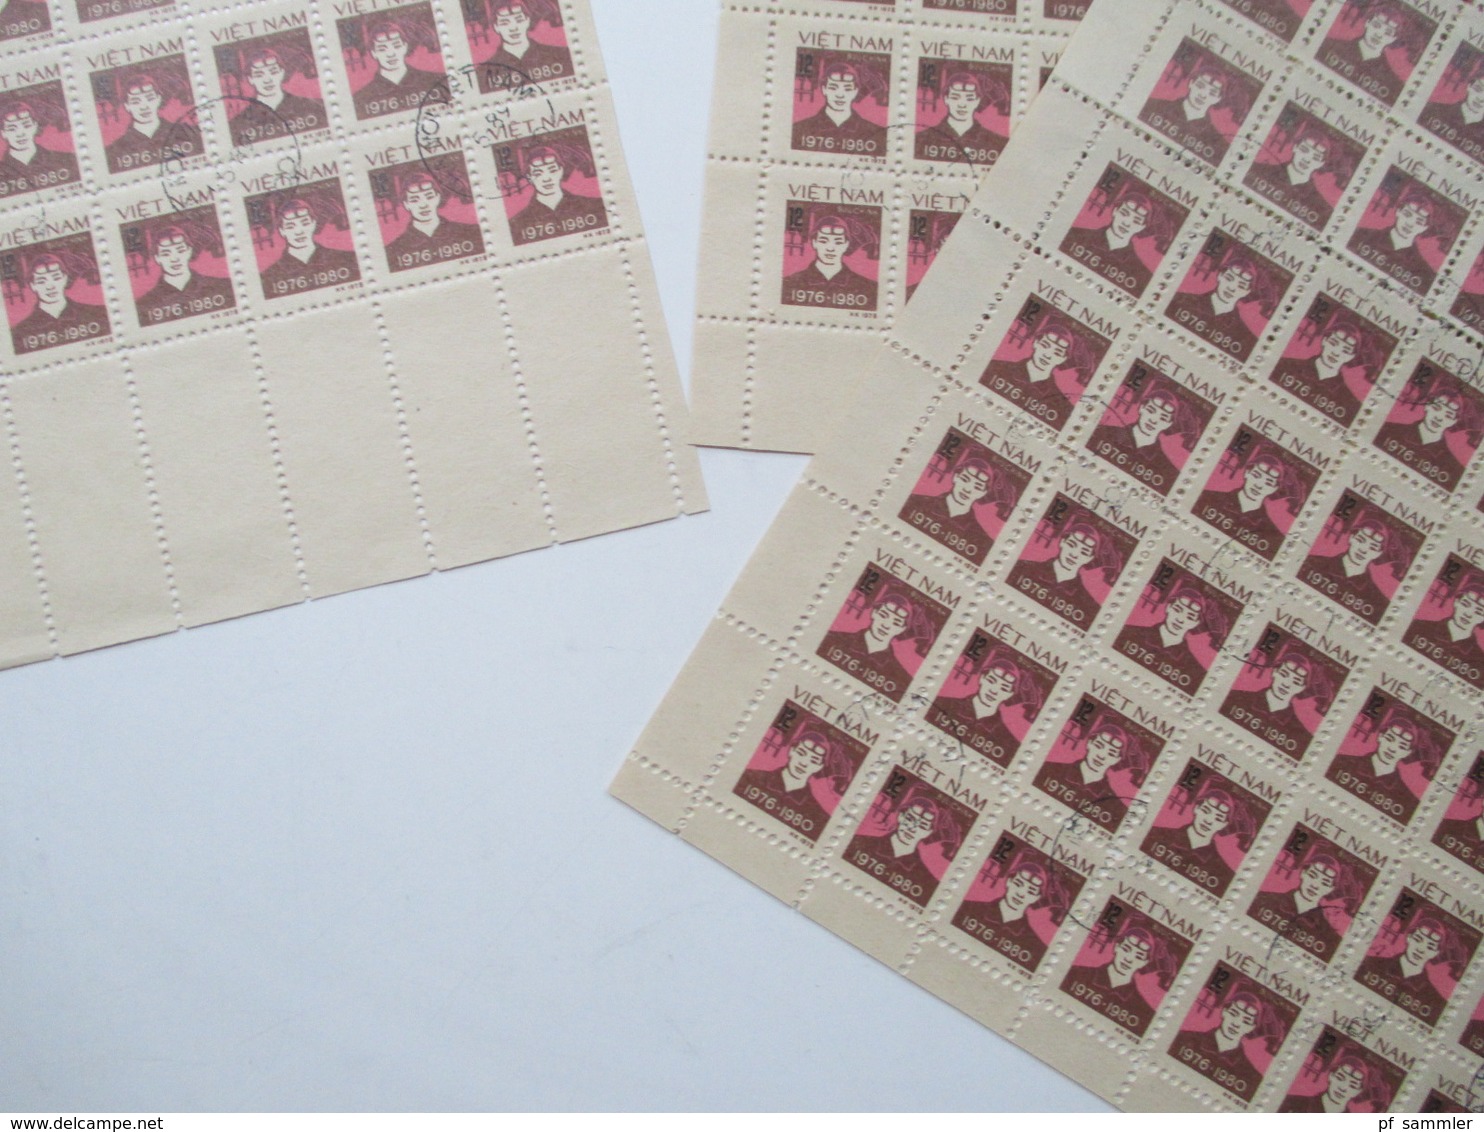 Vietnam Ca. 1979 -80er Jahre Bogenposten / Bogenteile Mehr Als 75 Stk / über 4000 Marken Gestempelt! Fundgrube! Hoher KW - Colecciones (sin álbumes)